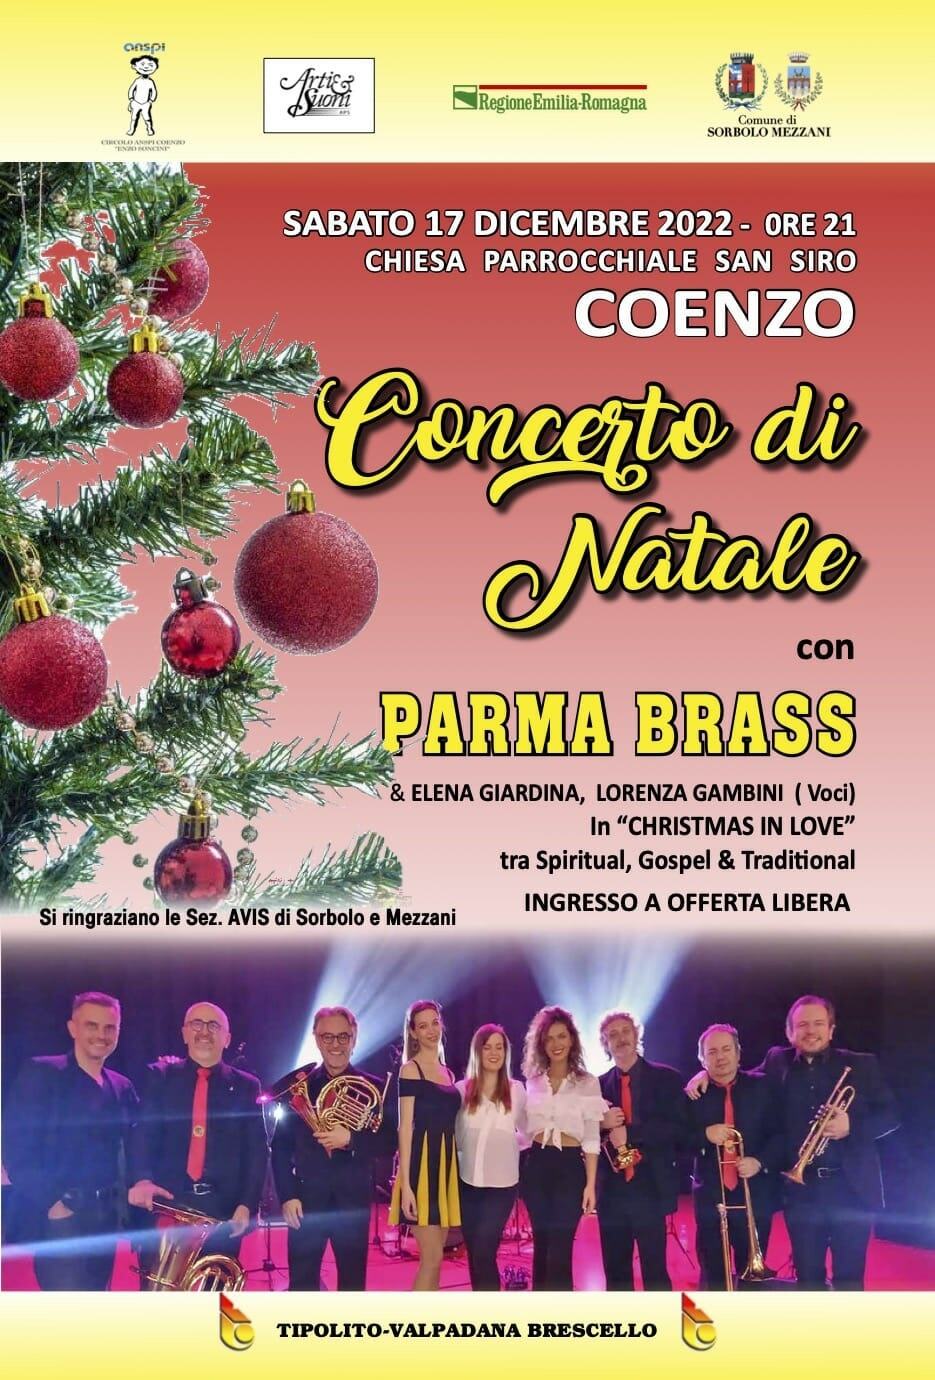 Concerto di Natale con i Parma Brass a Coenzo